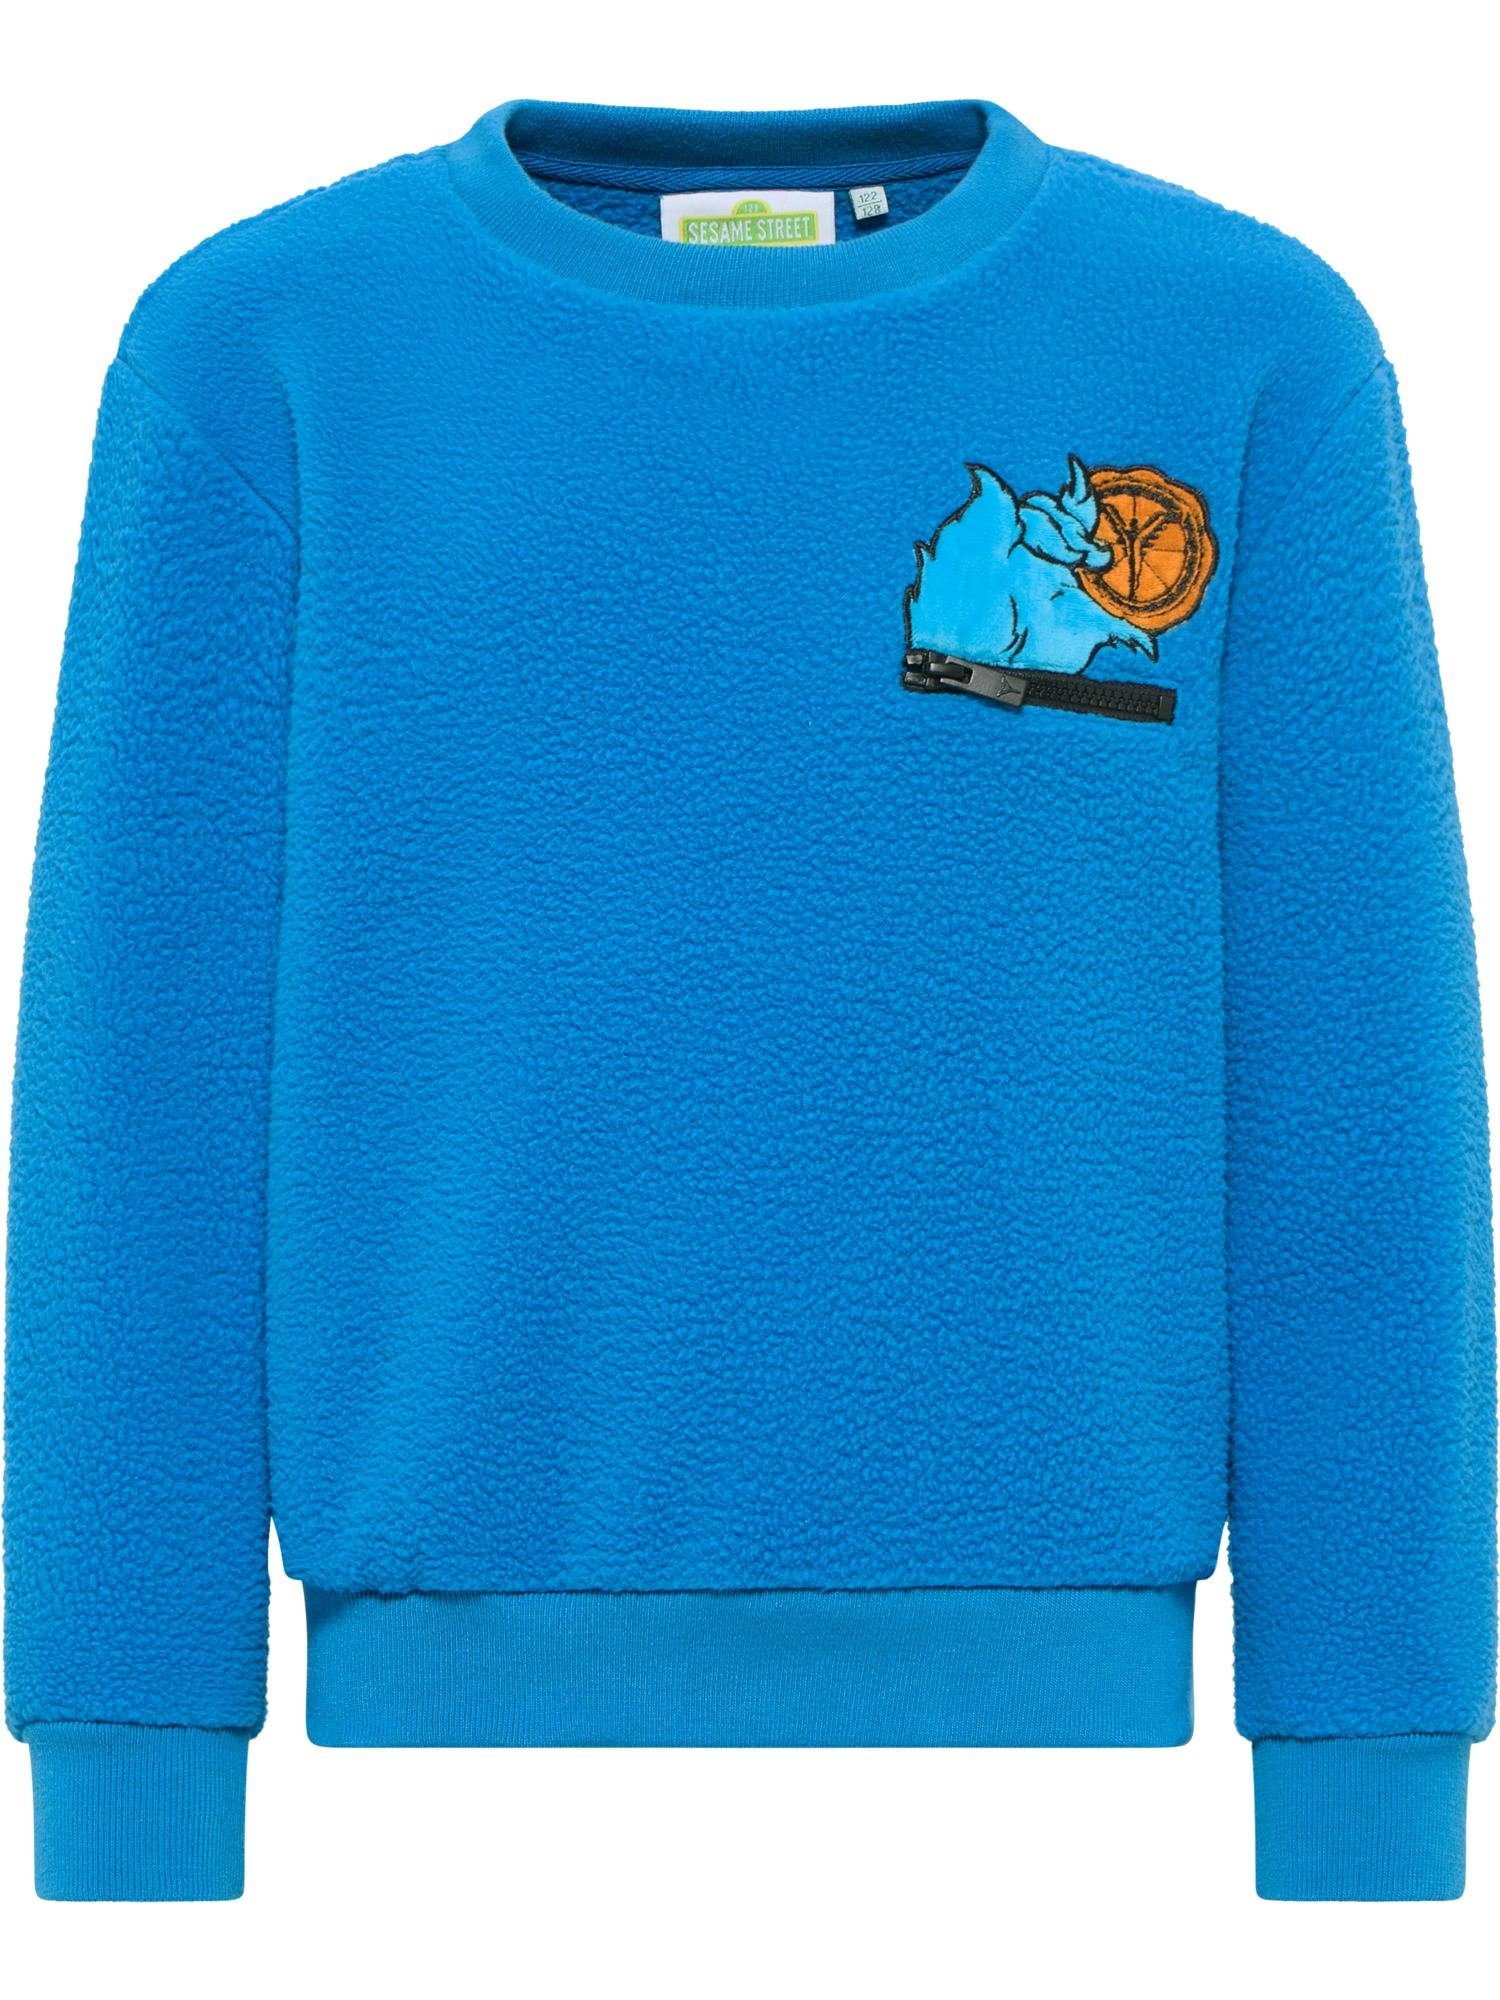 Decker Sweatshirt Blau COLUCCI CARLO